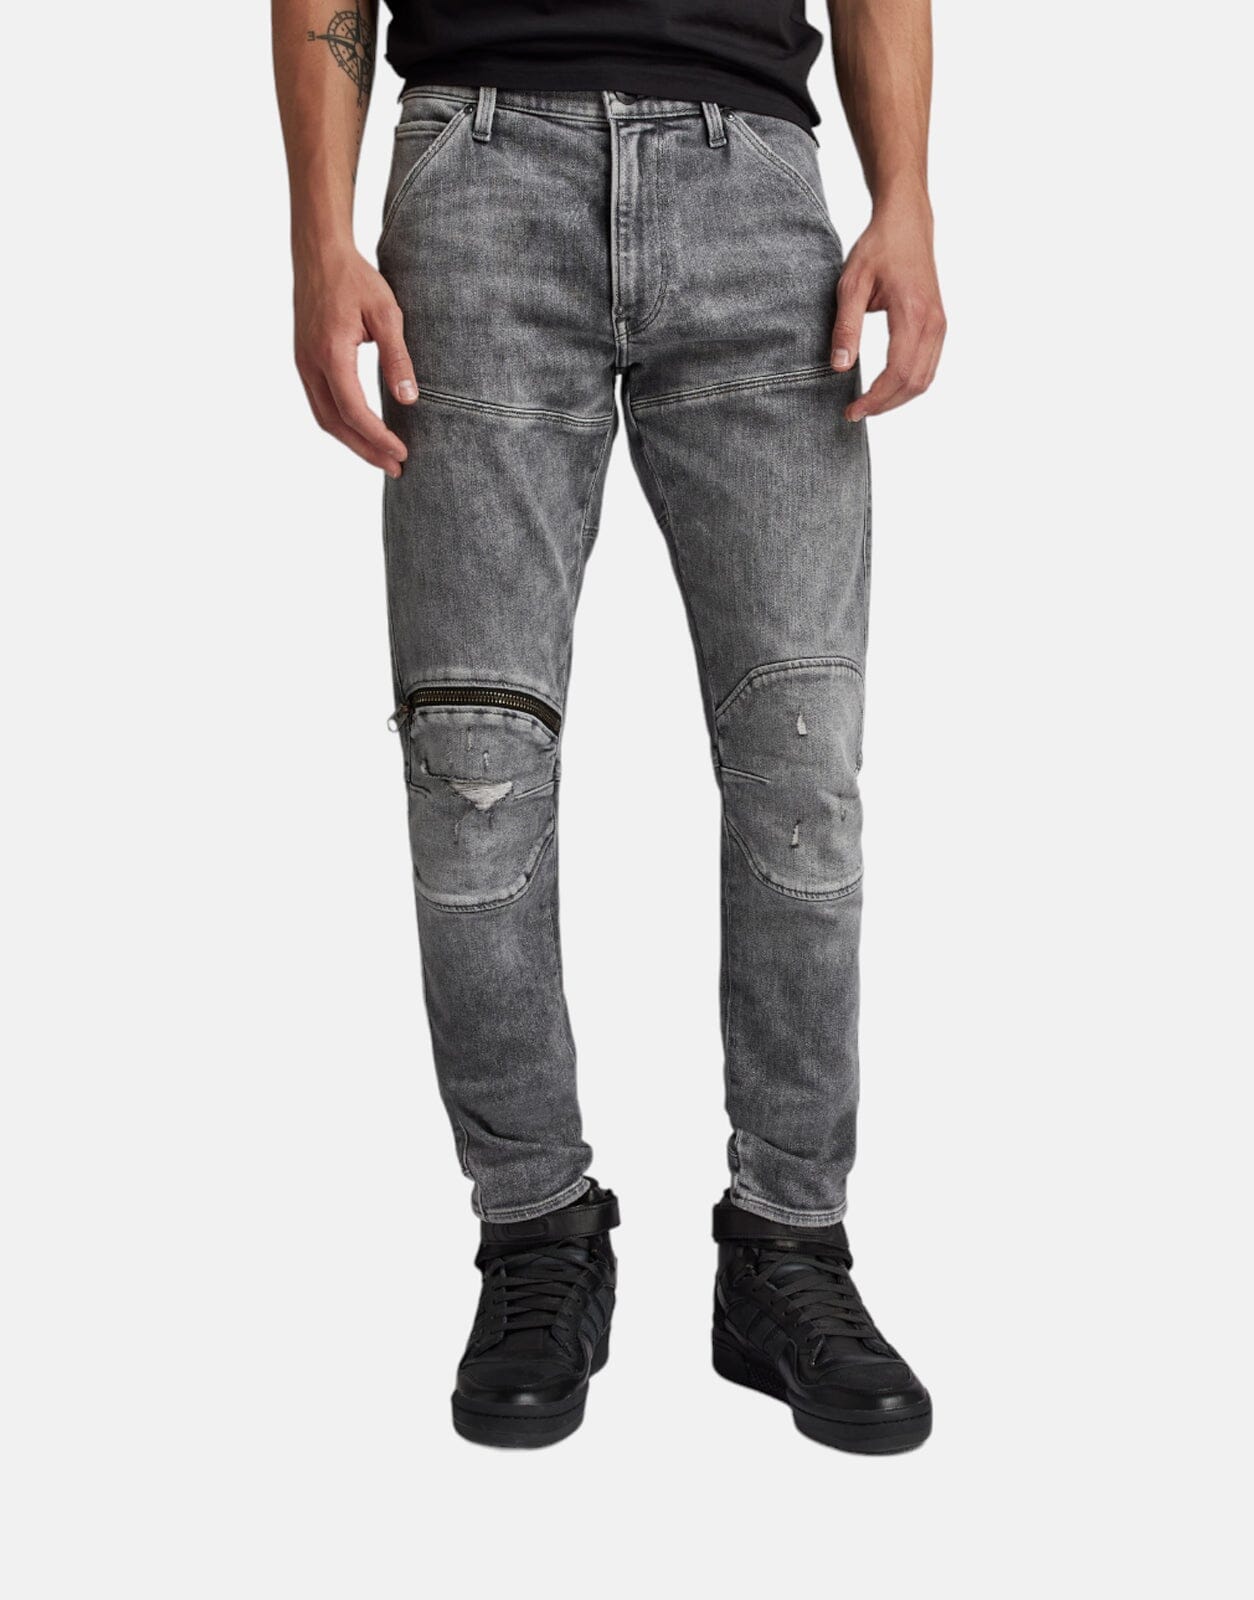 G-Star RAW 5620 3D Zip Knee Skinny Jeans - Subwear